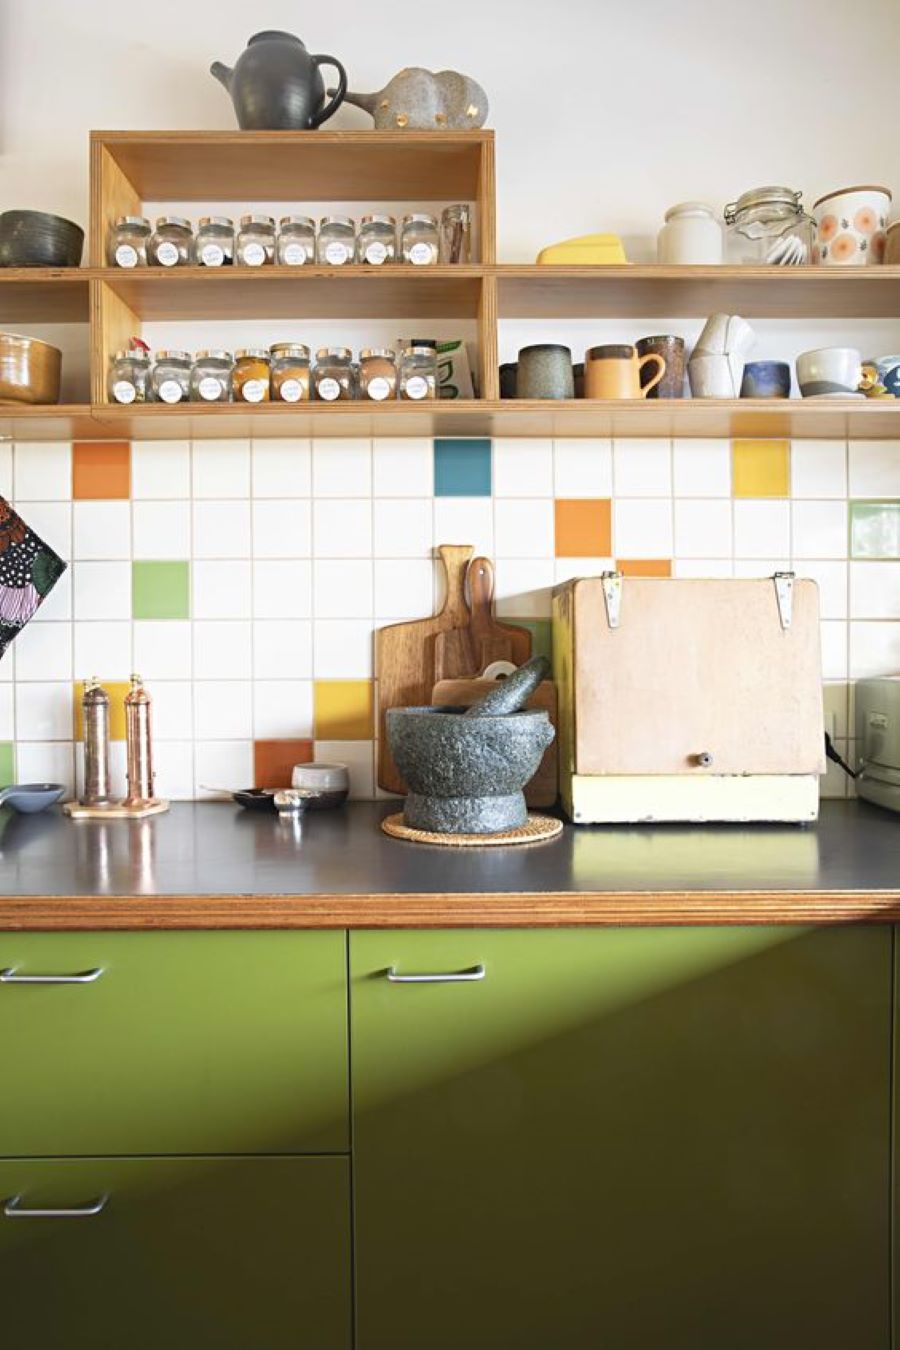 Cocina con muebles inferiores de color verde, mesón de madera. Muros con azulejos cuadrados blancos y de colores azul, naranjo, amarillo y verde. Repisa de madera, abierta, en la parte superior, con frascos de vidrio y tazones de cerámica. 